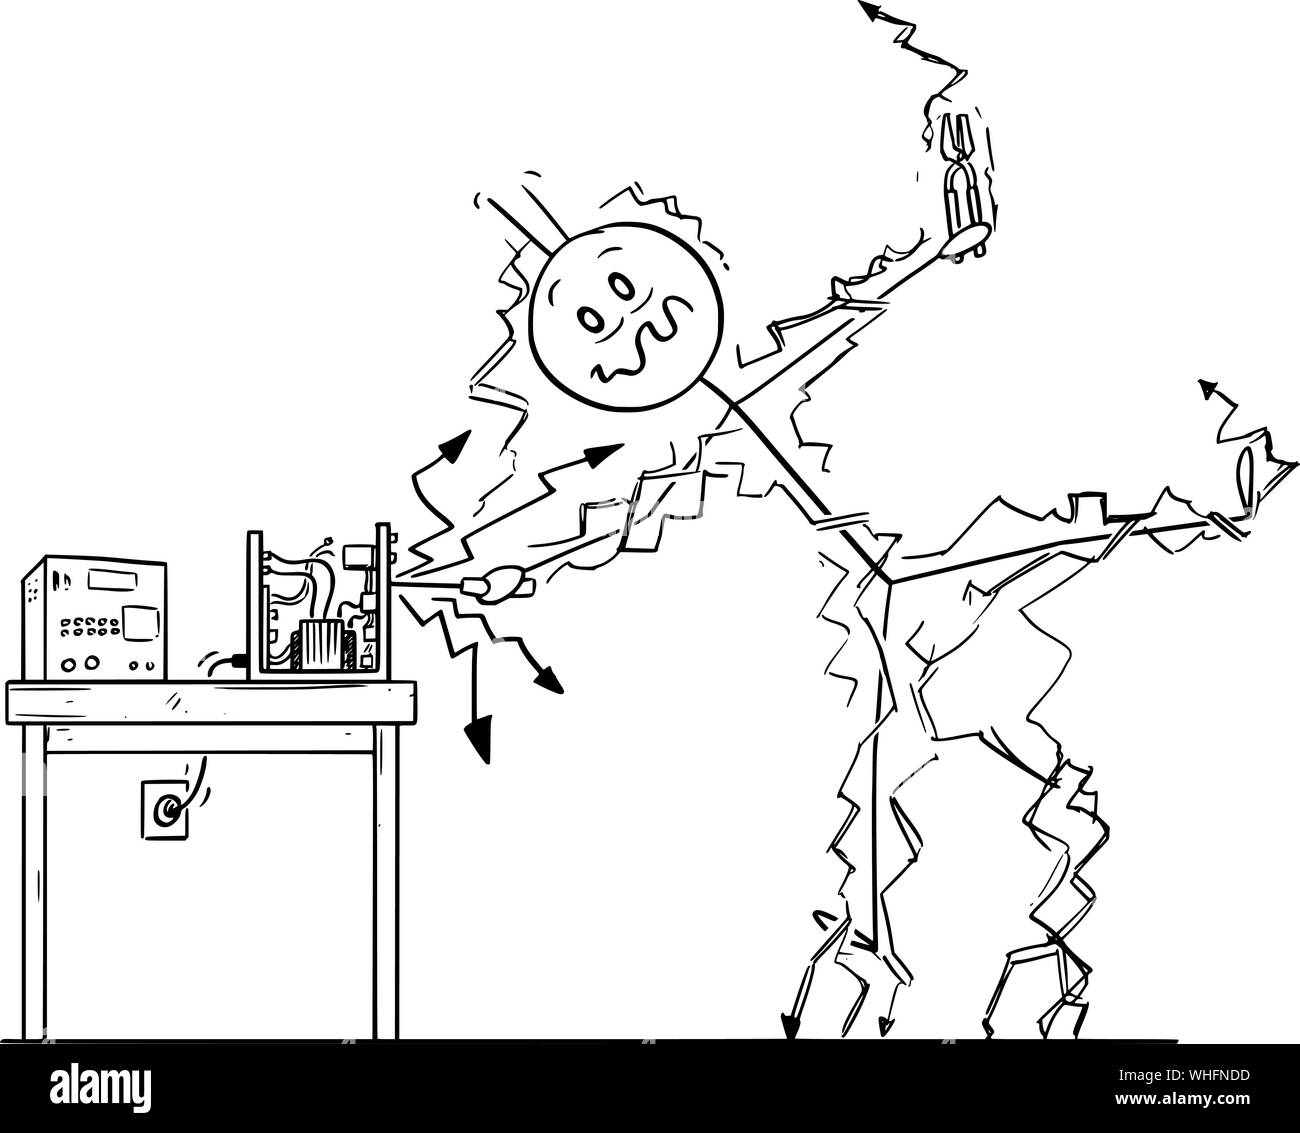 Vector cartoon stick figura disegno illustrazione concettuale dell'uomo o aggiustatore riparare alcuni dispositivo elettronico e ottenere la scossa elettrica. Occupational Safety Concept. Illustrazione Vettoriale